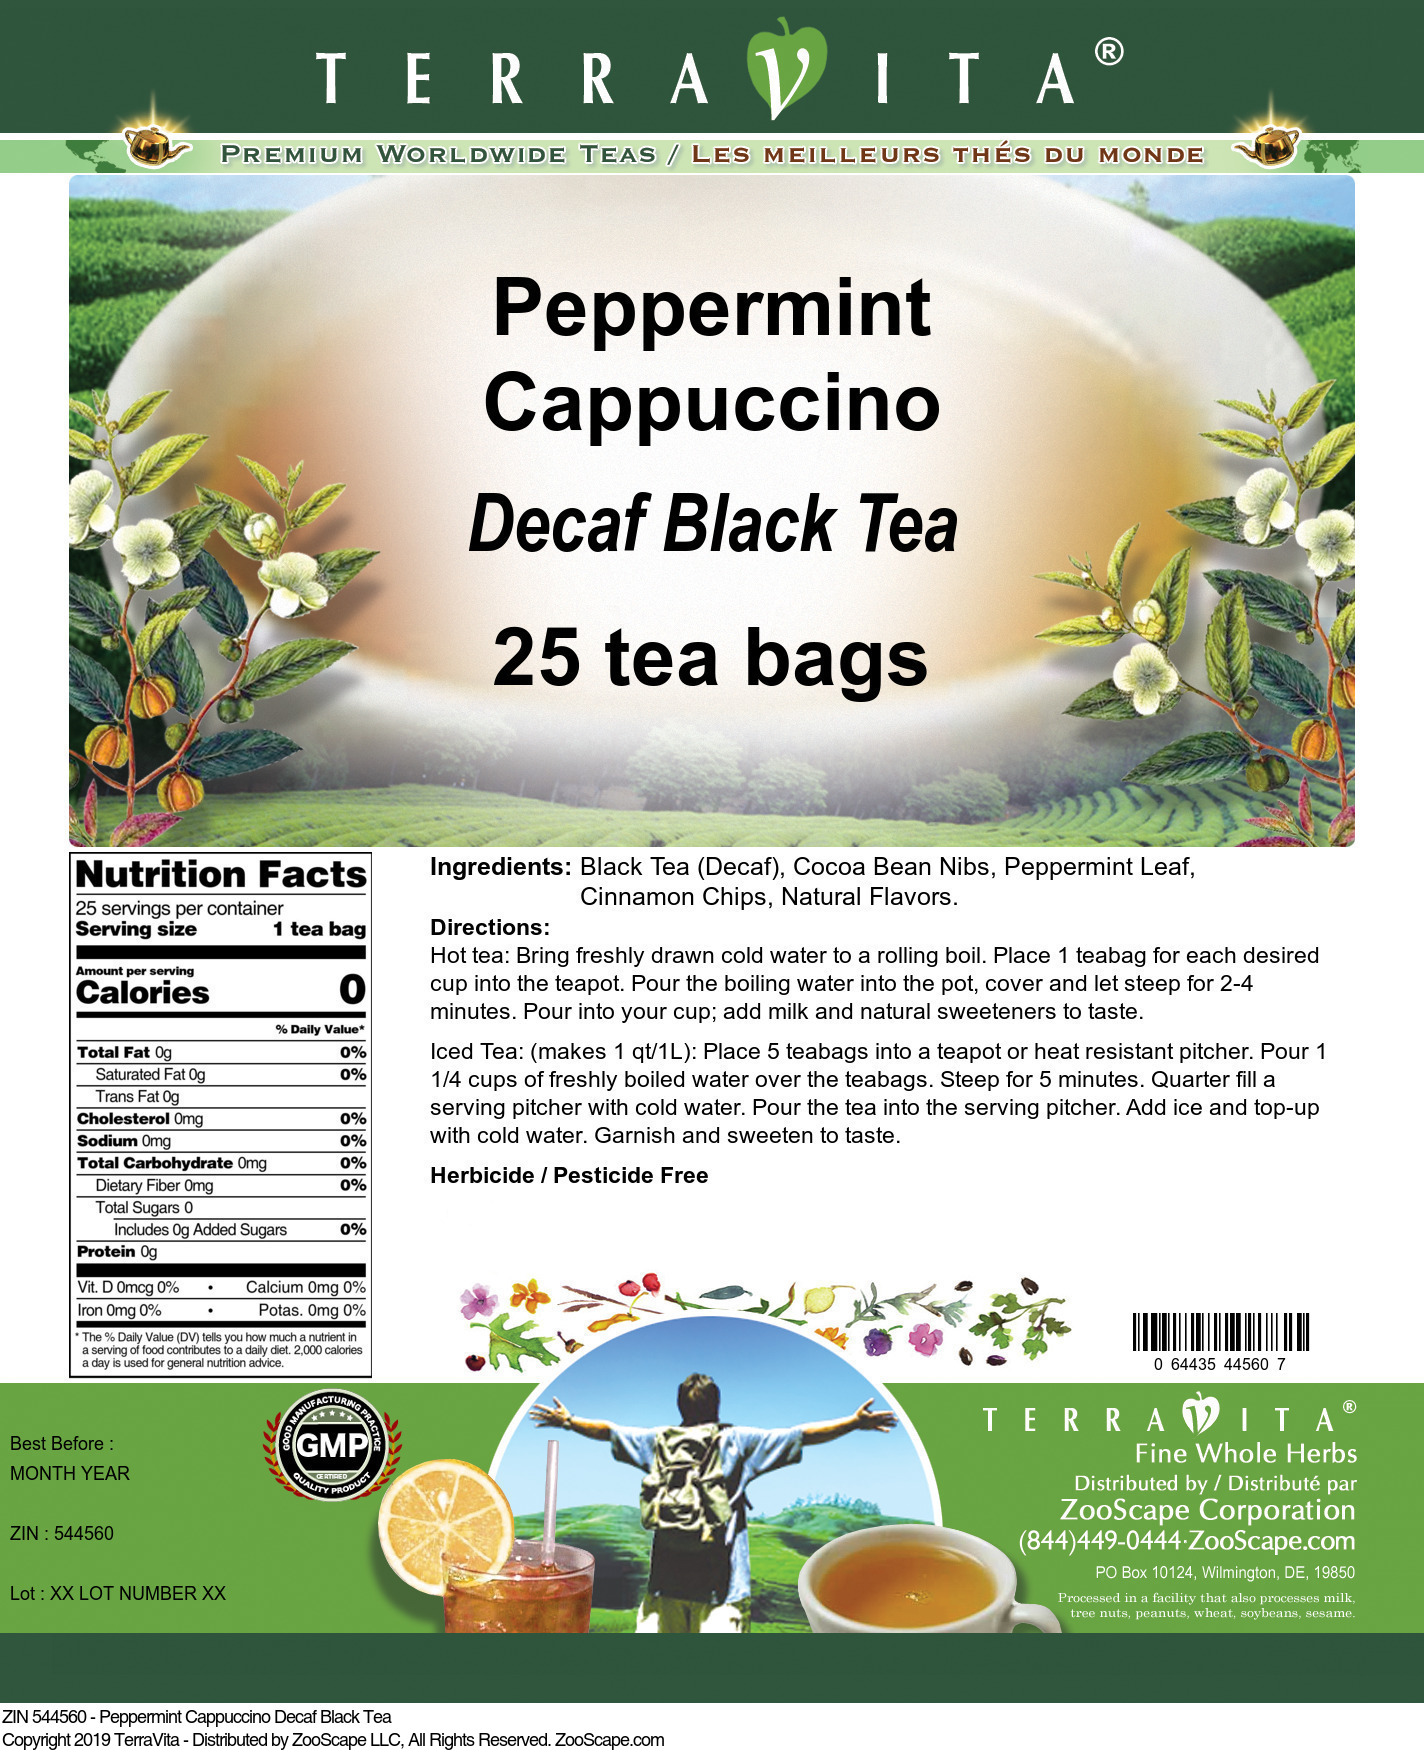 Peppermint Cappuccino Decaf Black Tea - Label